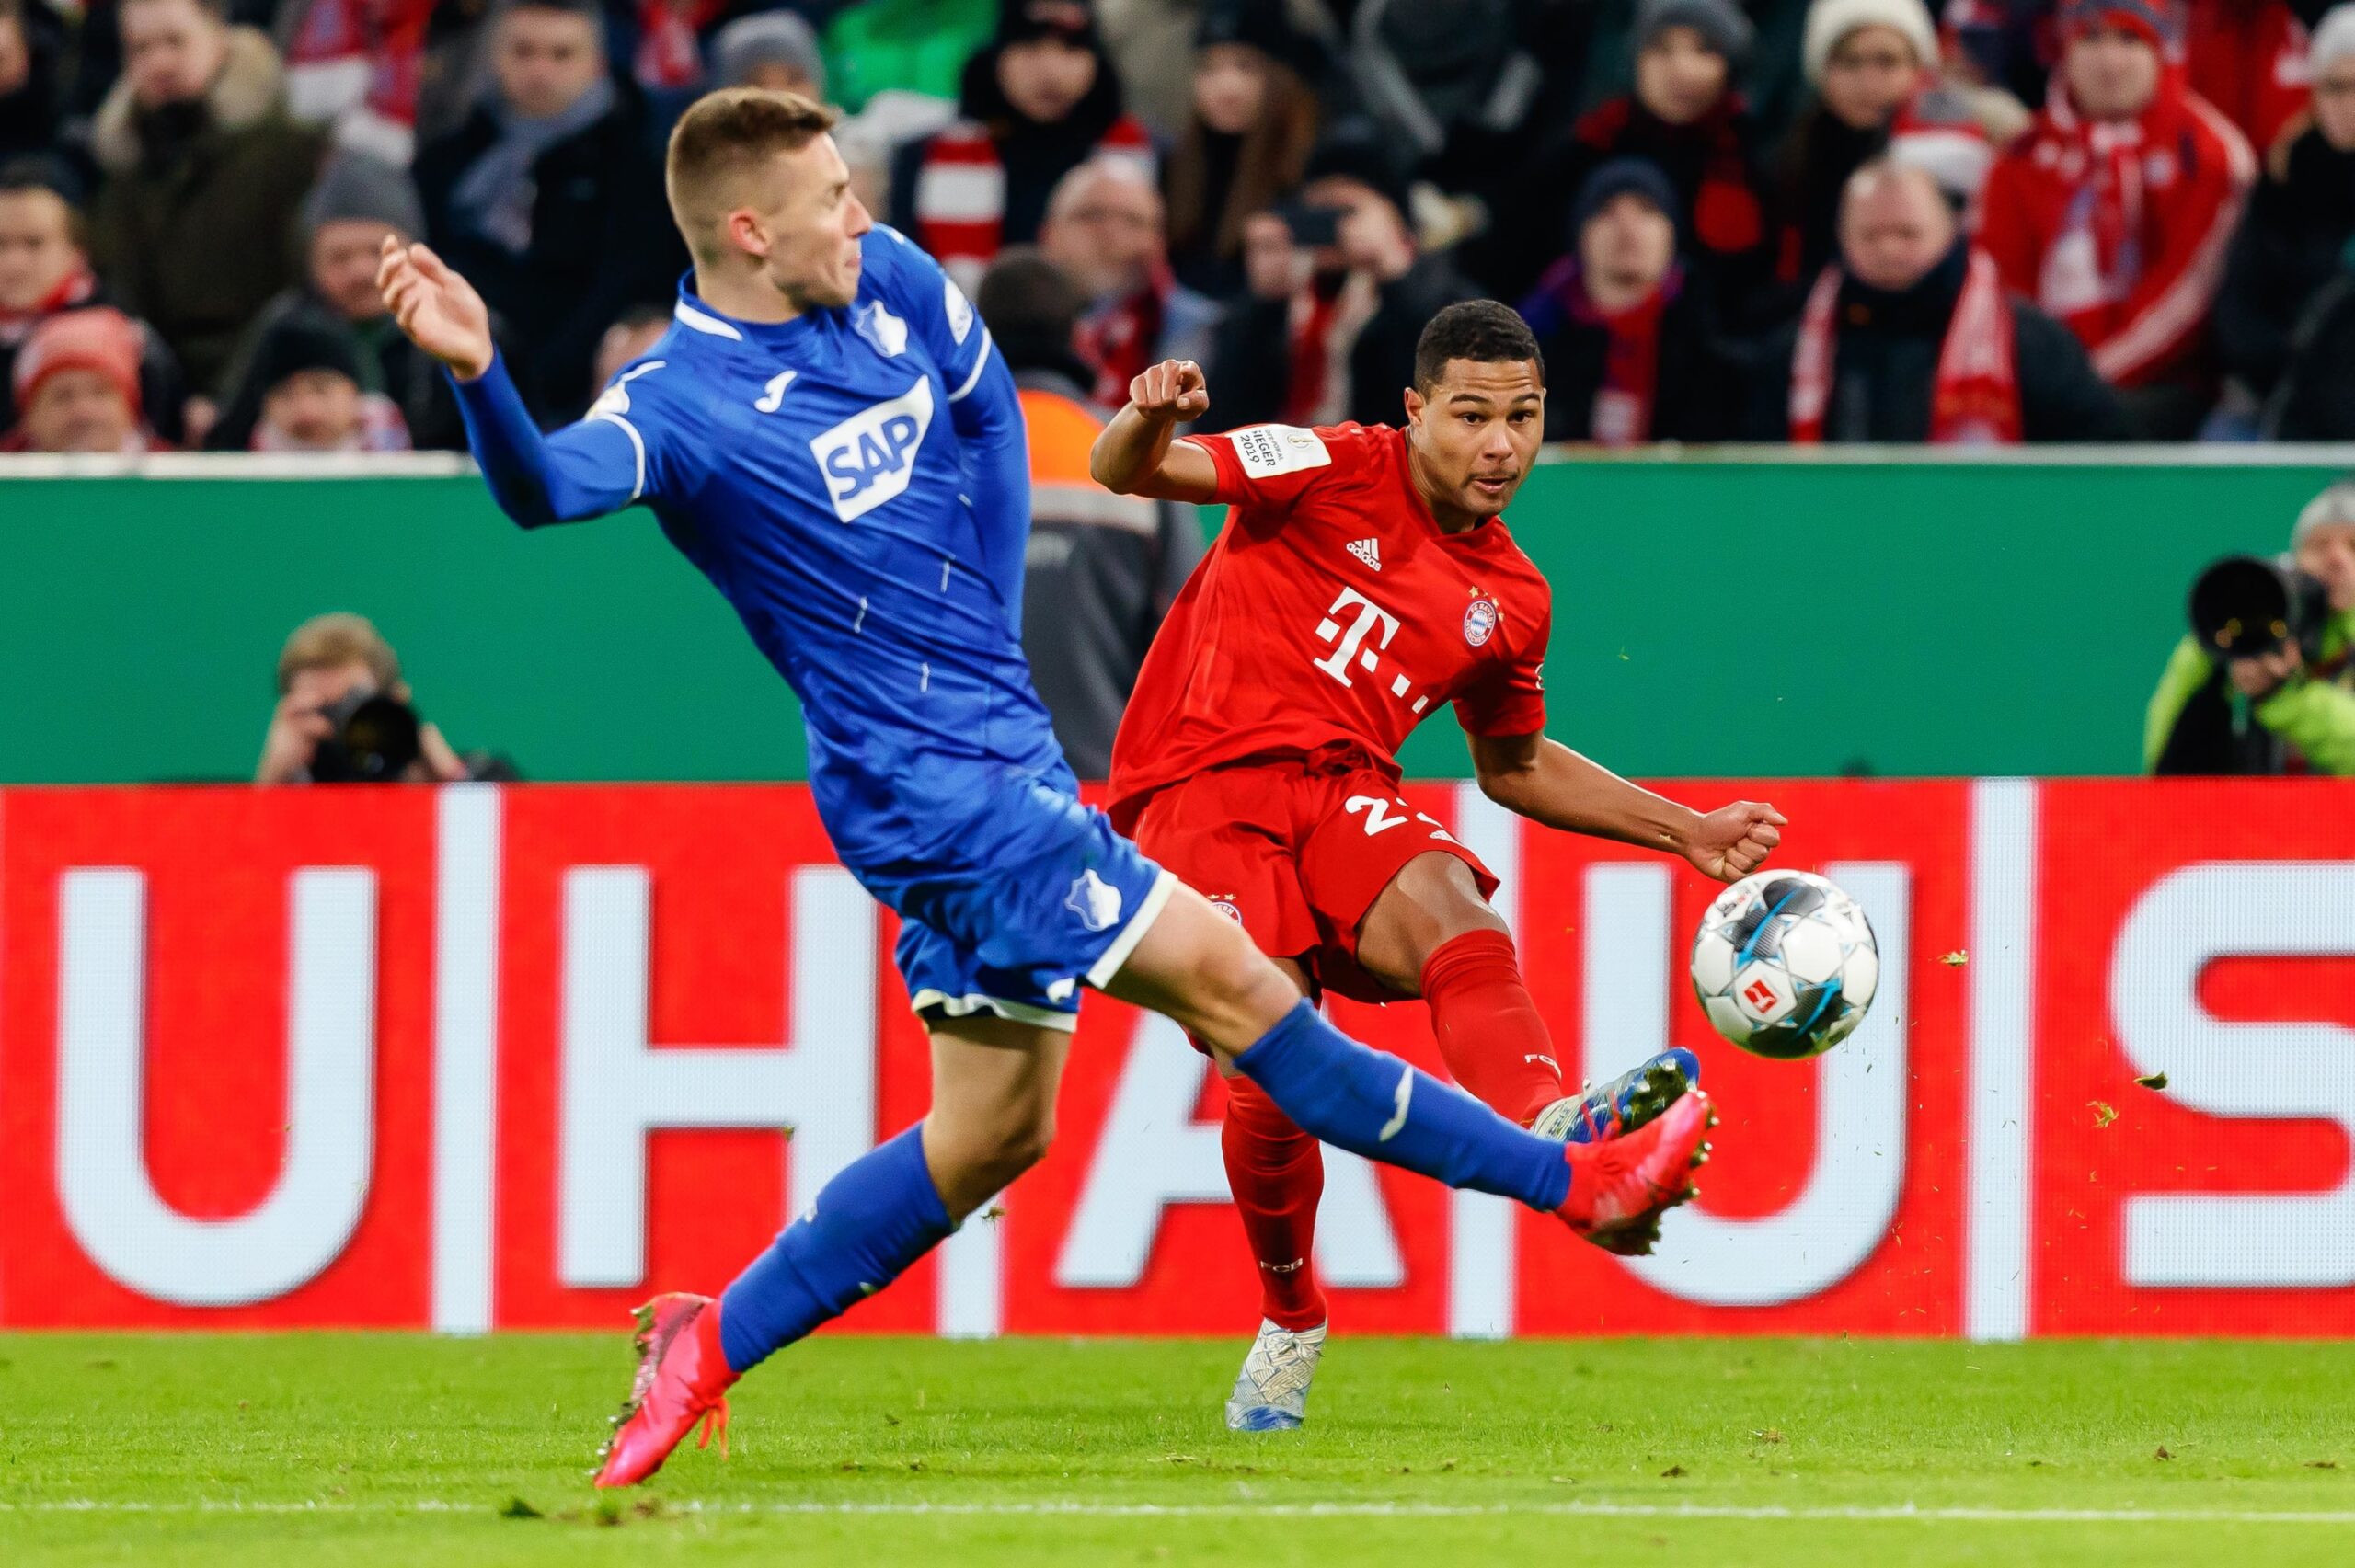 Hoffenheim – Bayern Munich les compos avec Lewandowski, Muller, Sané titulaires